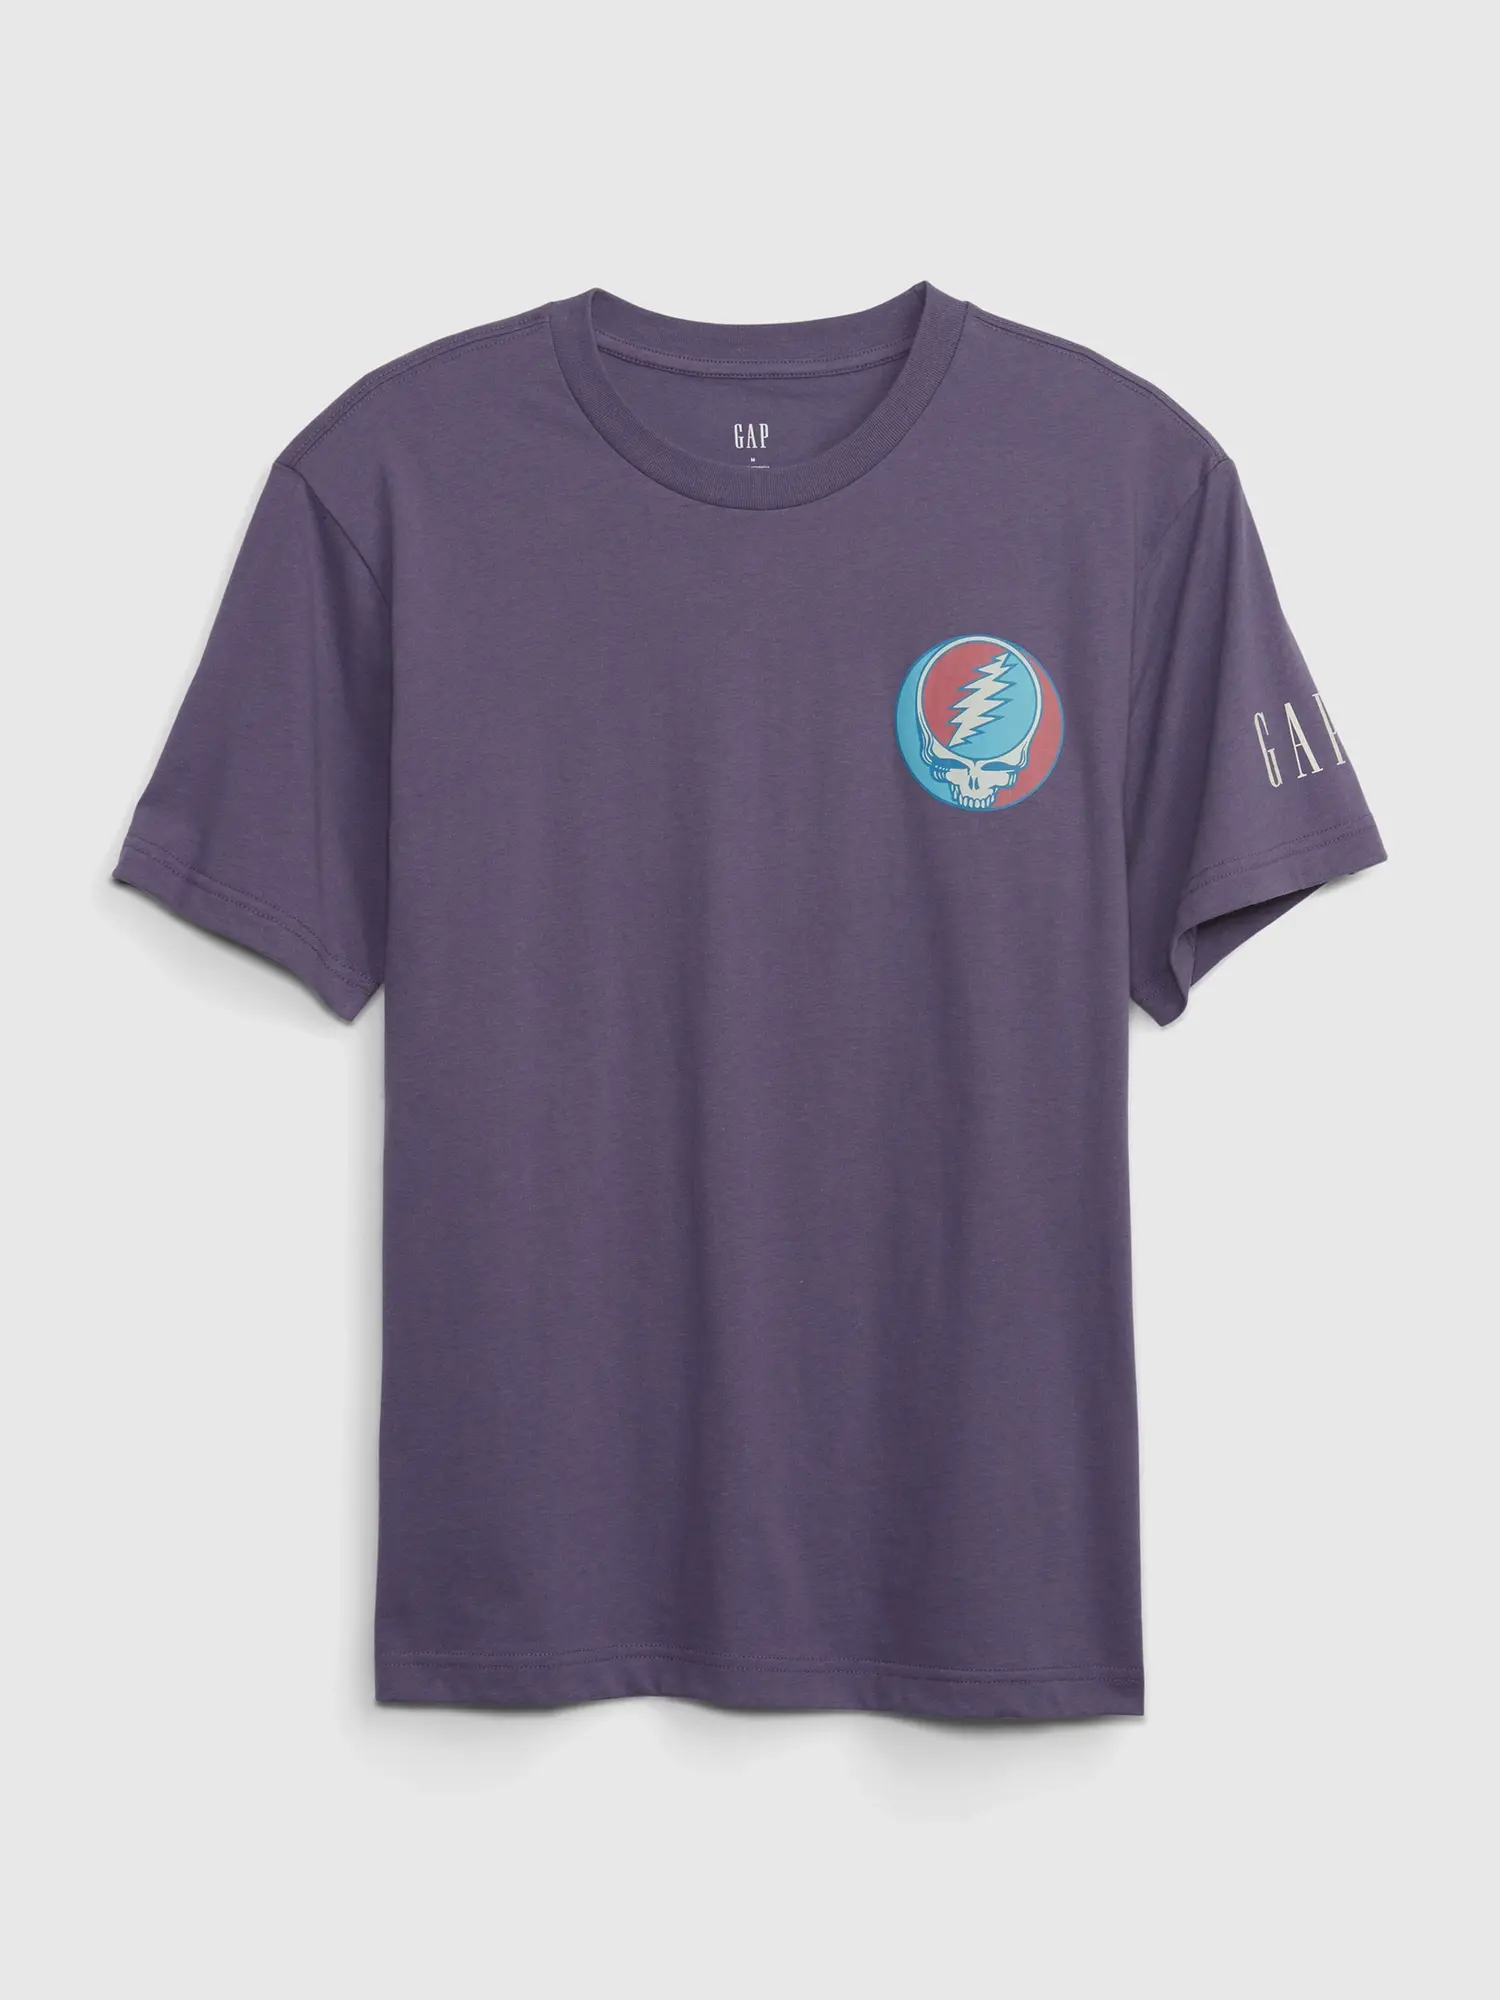 Gap Grateful Dead Graphic T-Shirt purple. 1